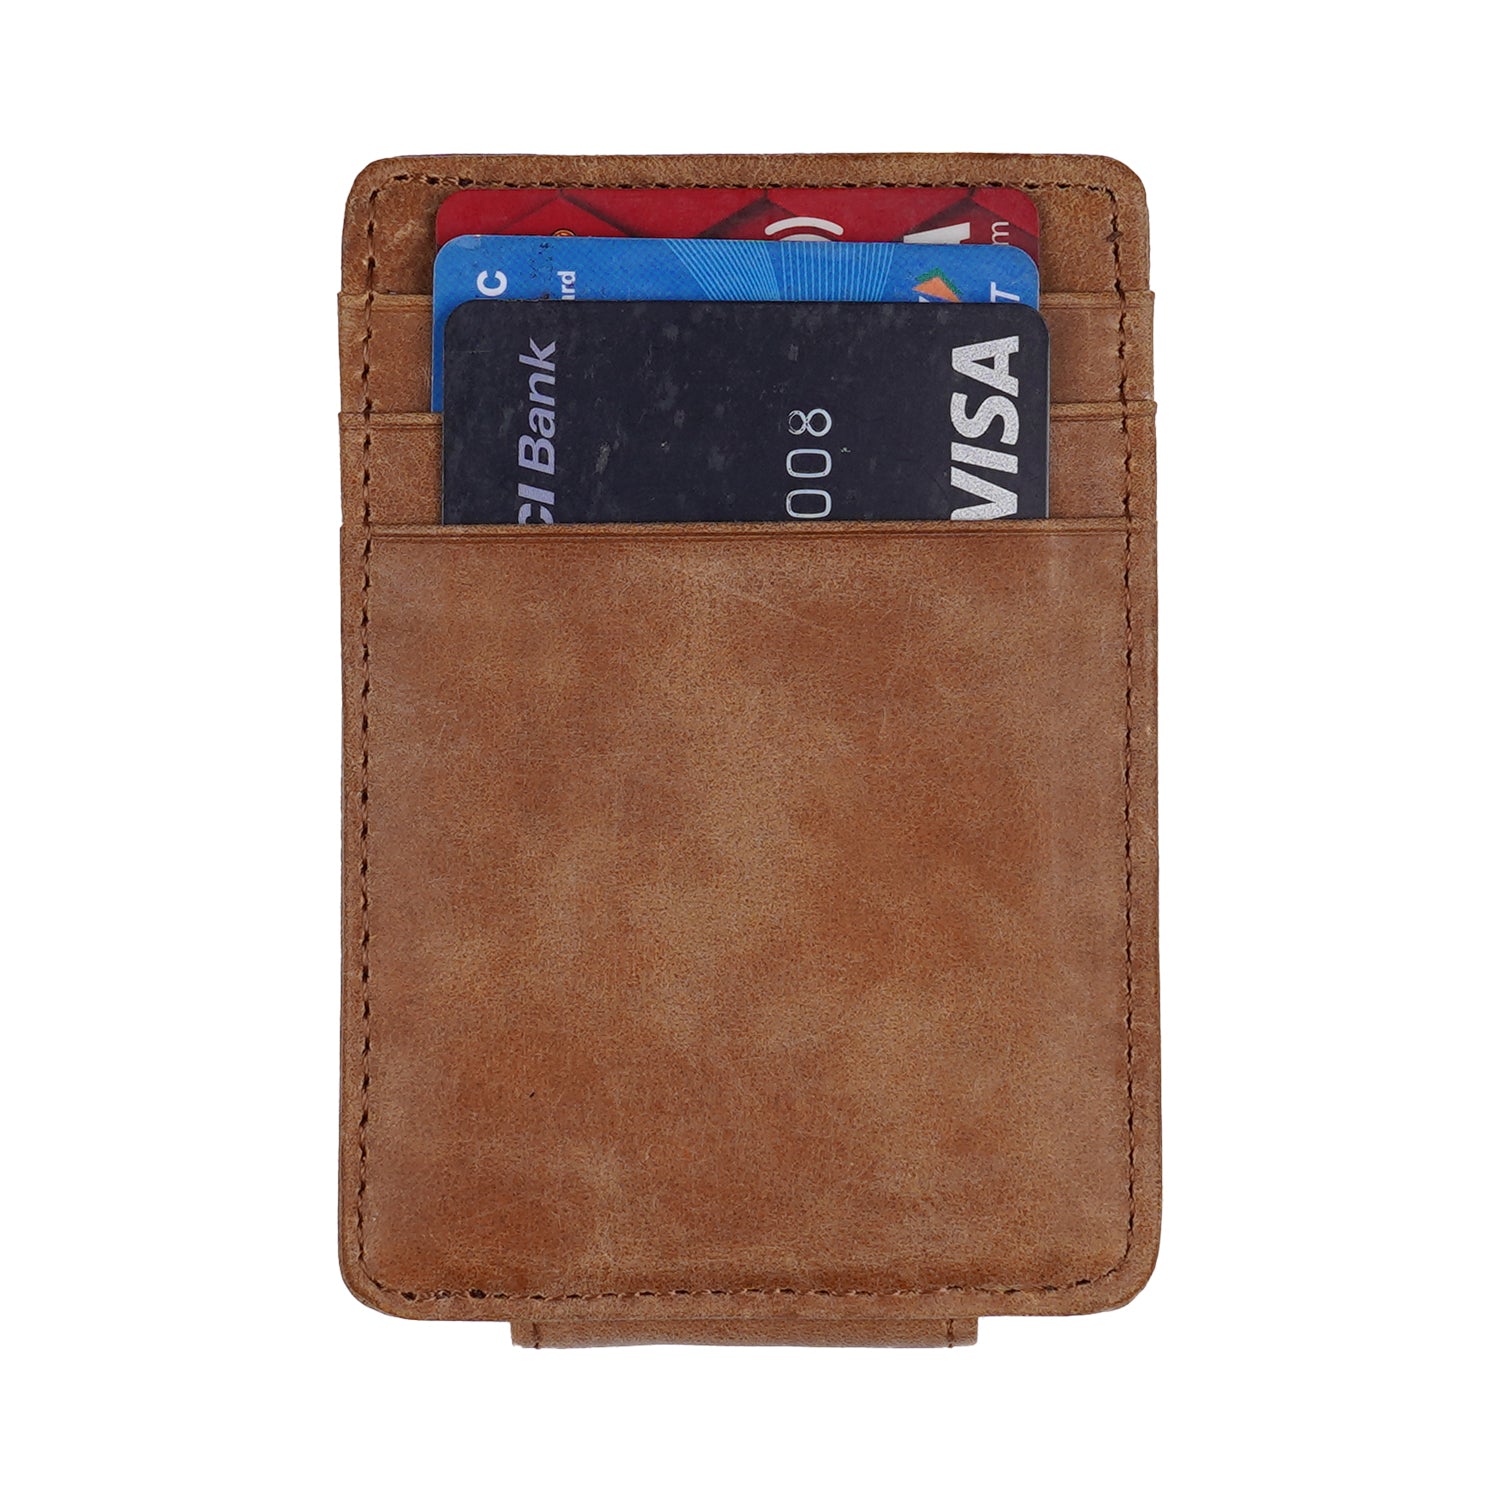 GetUSCart- TRAVANDO Money Clip Wallet